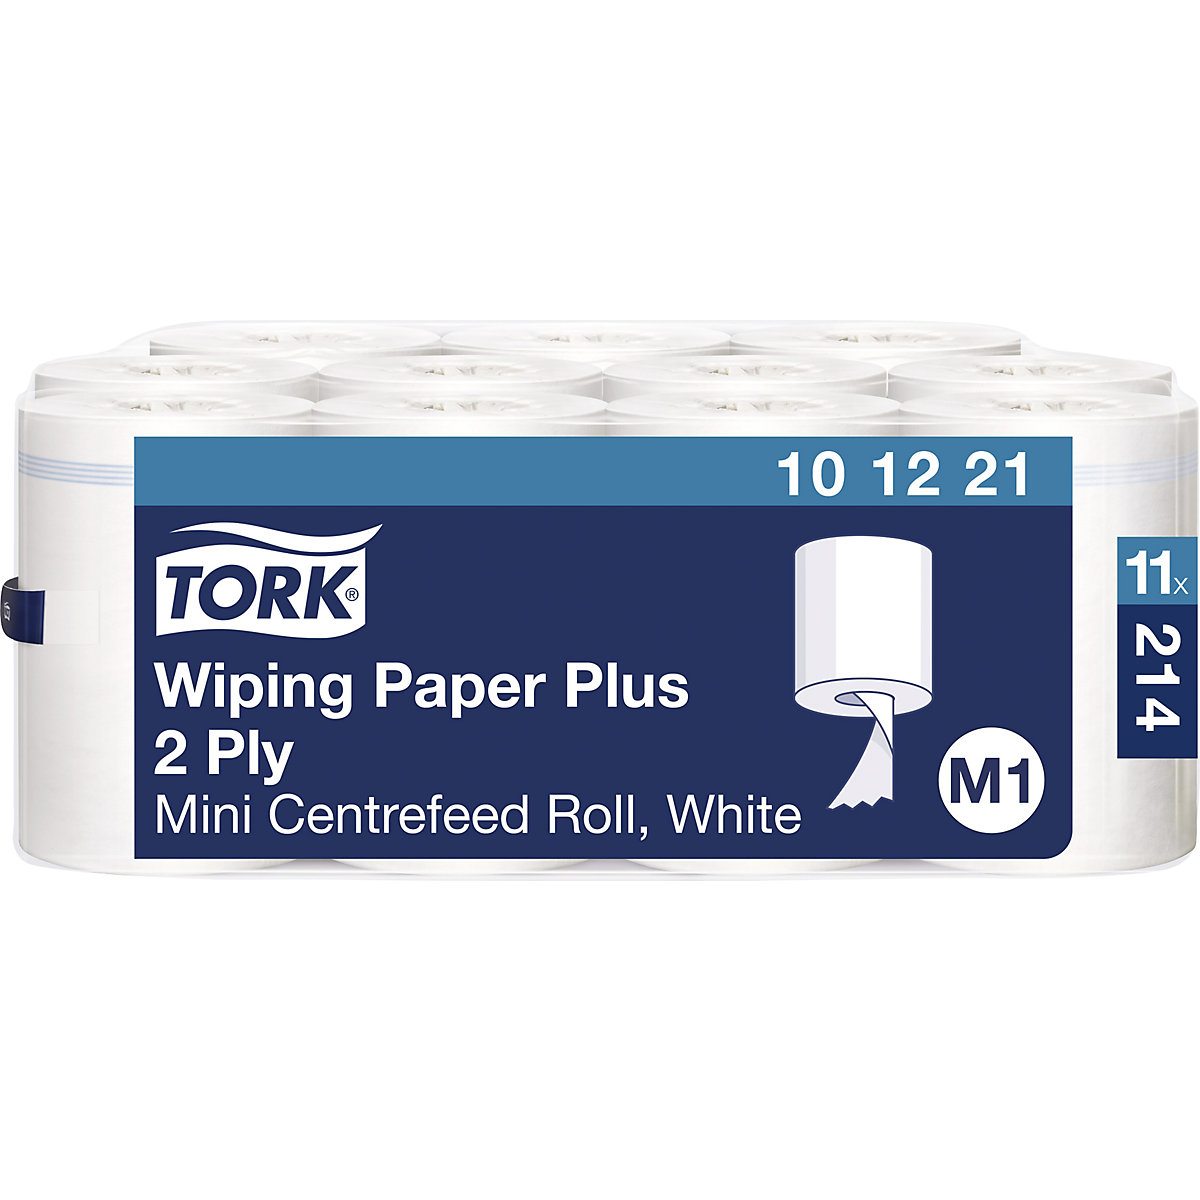 Čvrsti višenamjenski papirnati ručnici mini s unutrašnjim odmotavanjem - TORK